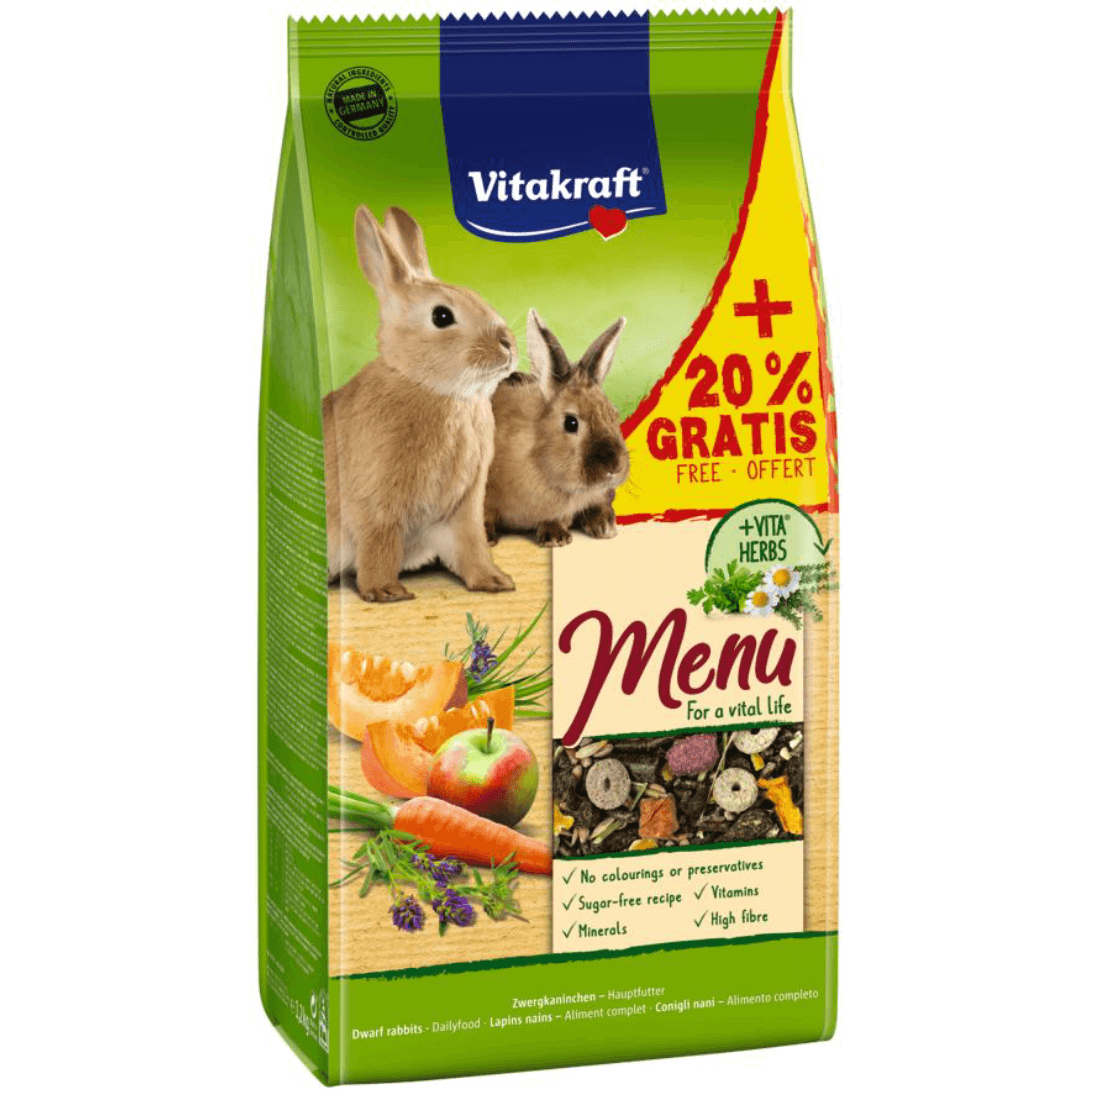 Hrana pentru iepuri Vitakraft Premium Menu 1kg+20% Gratis